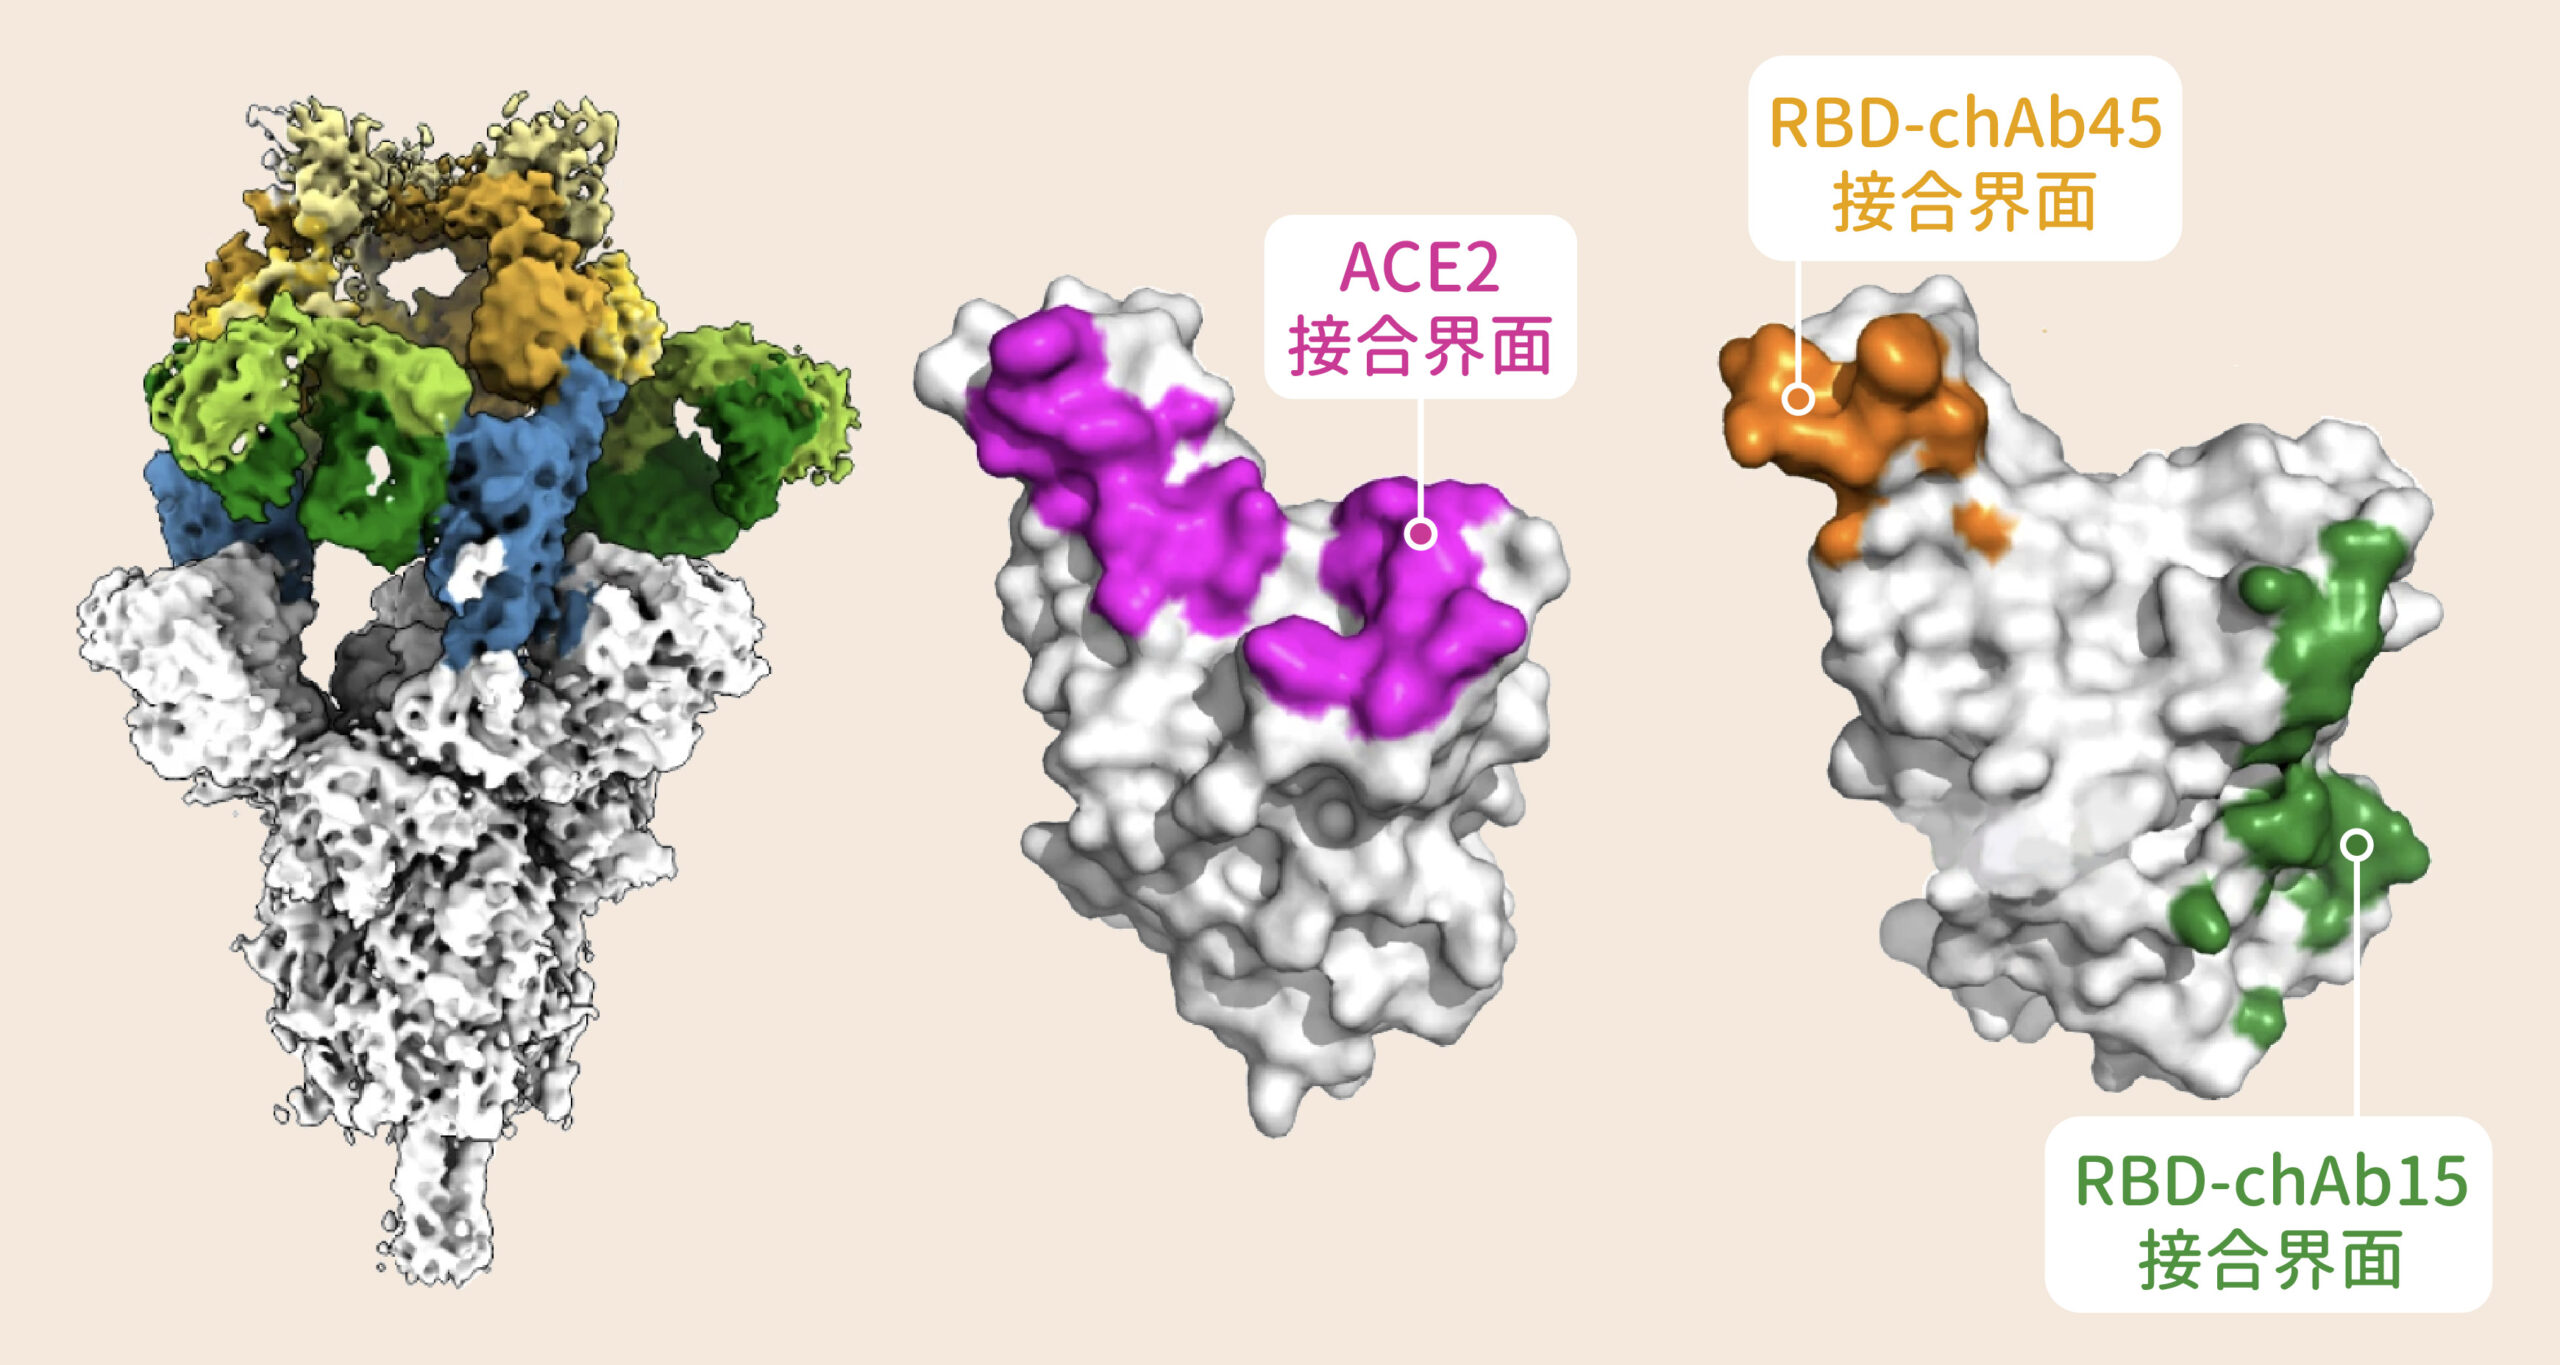 雖然新冠病毒 Alpha 株的棘蛋白表面讓某些抗體難以附著，還好仍有兩款抗體 chAb15（綠色）、chAb45（黃色）能有效「卡住」棘蛋白，干擾棘蛋白與宿主細胞結合。抗體 chAb15、chAb45 附著的位置，正好就是棘蛋白與宿主細胞結合的地方。圖│Nature Structural & Molecular Biology